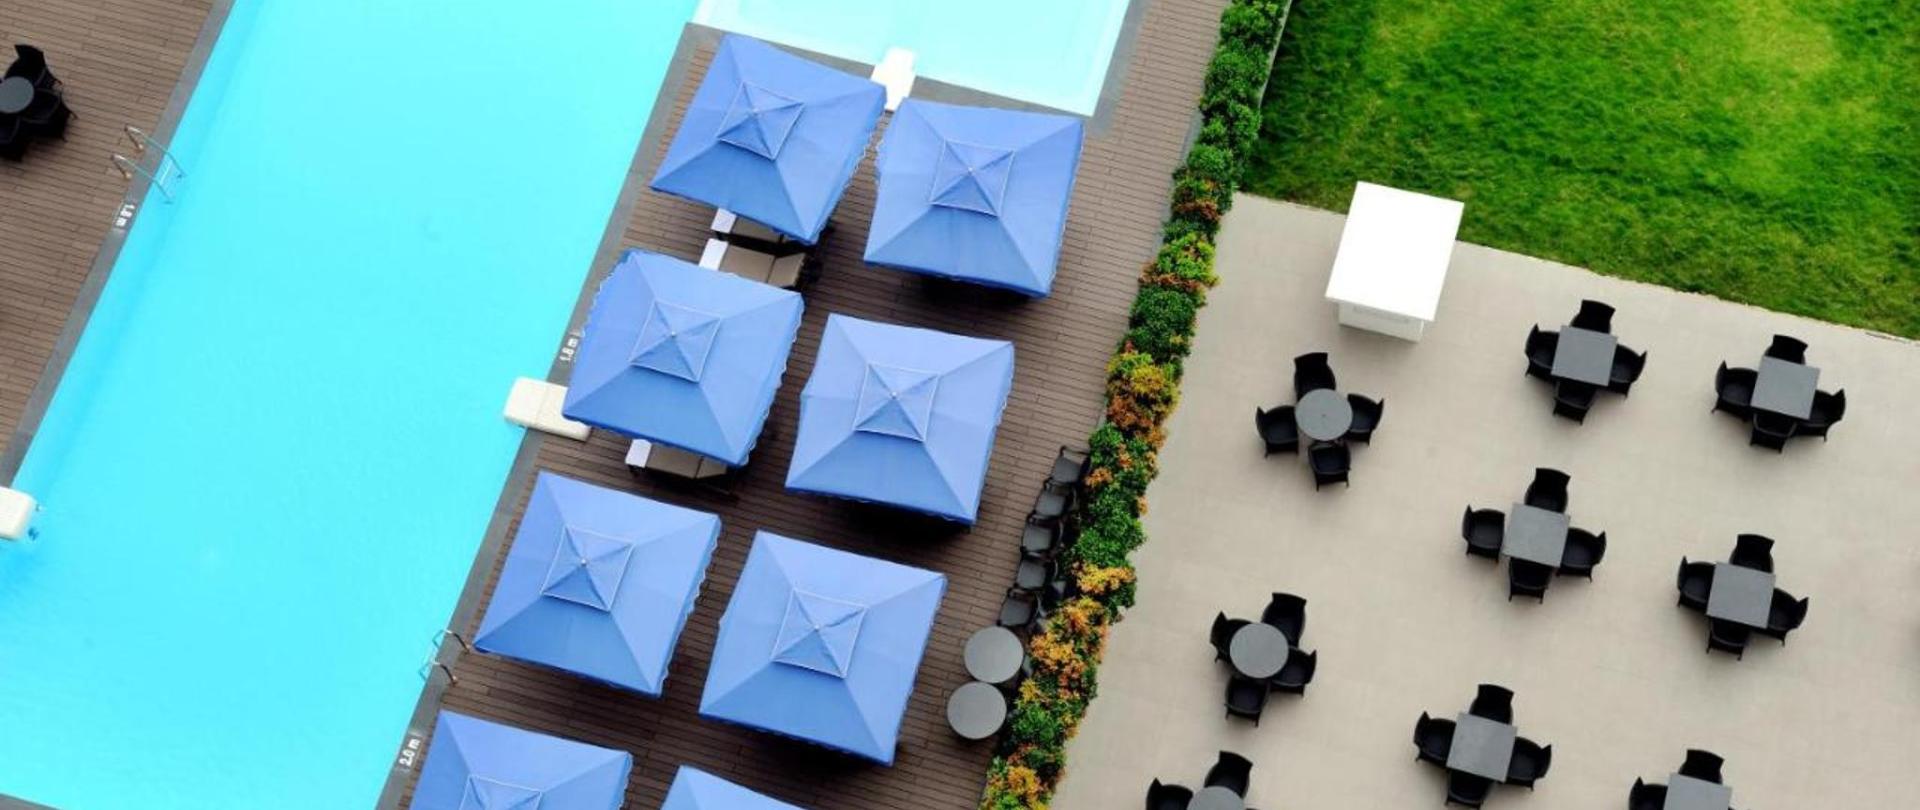 Khách sạn Becamex với thiết kế hiện đại và sang trọng là sự lựa chọn tuyệt vời cho chuyến du lịch của bạn. Với thế giới những tiện nghi đẳng cấp như nhà hàng sang trọng, phòng xông hơi, phòng tập thể dục, bể bơi và spa, bạn sẽ có những trải nghiệm tuyệt vời với sự phục vụ chuyên nghiệp của nhân viên khách sạn. Hãy khám phá hình ảnh khách sạn Becamex để khám phá một nơi nghỉ dưỡng hoàn hảo.